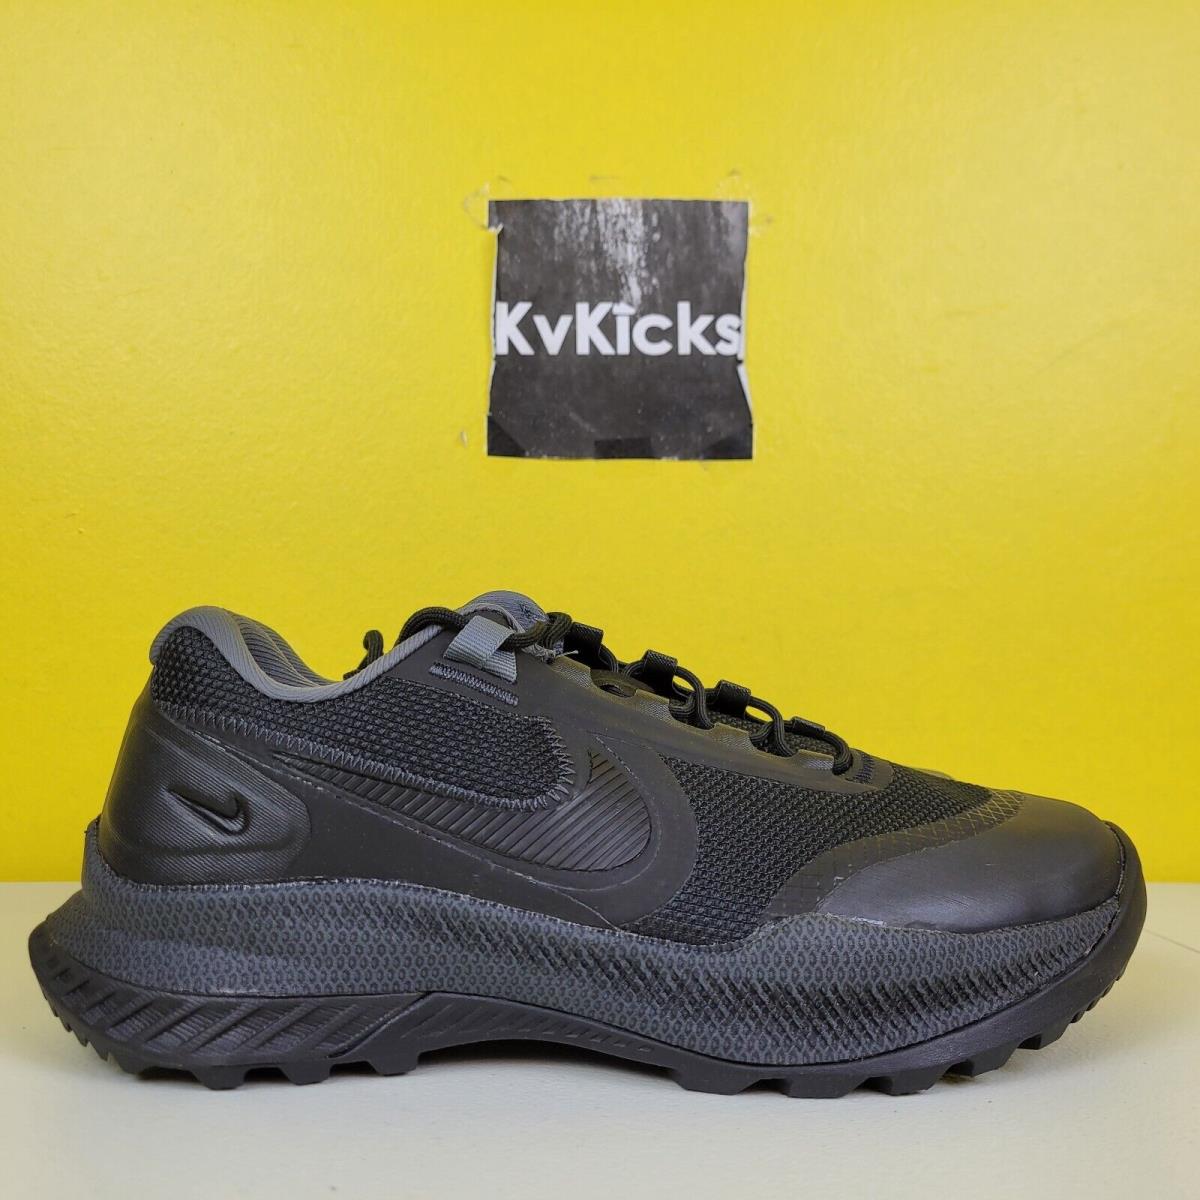 Nike React Sfb Carbon Low Athletic Black Military Boot Shoe CZ7339 Men`s Sz 10.5